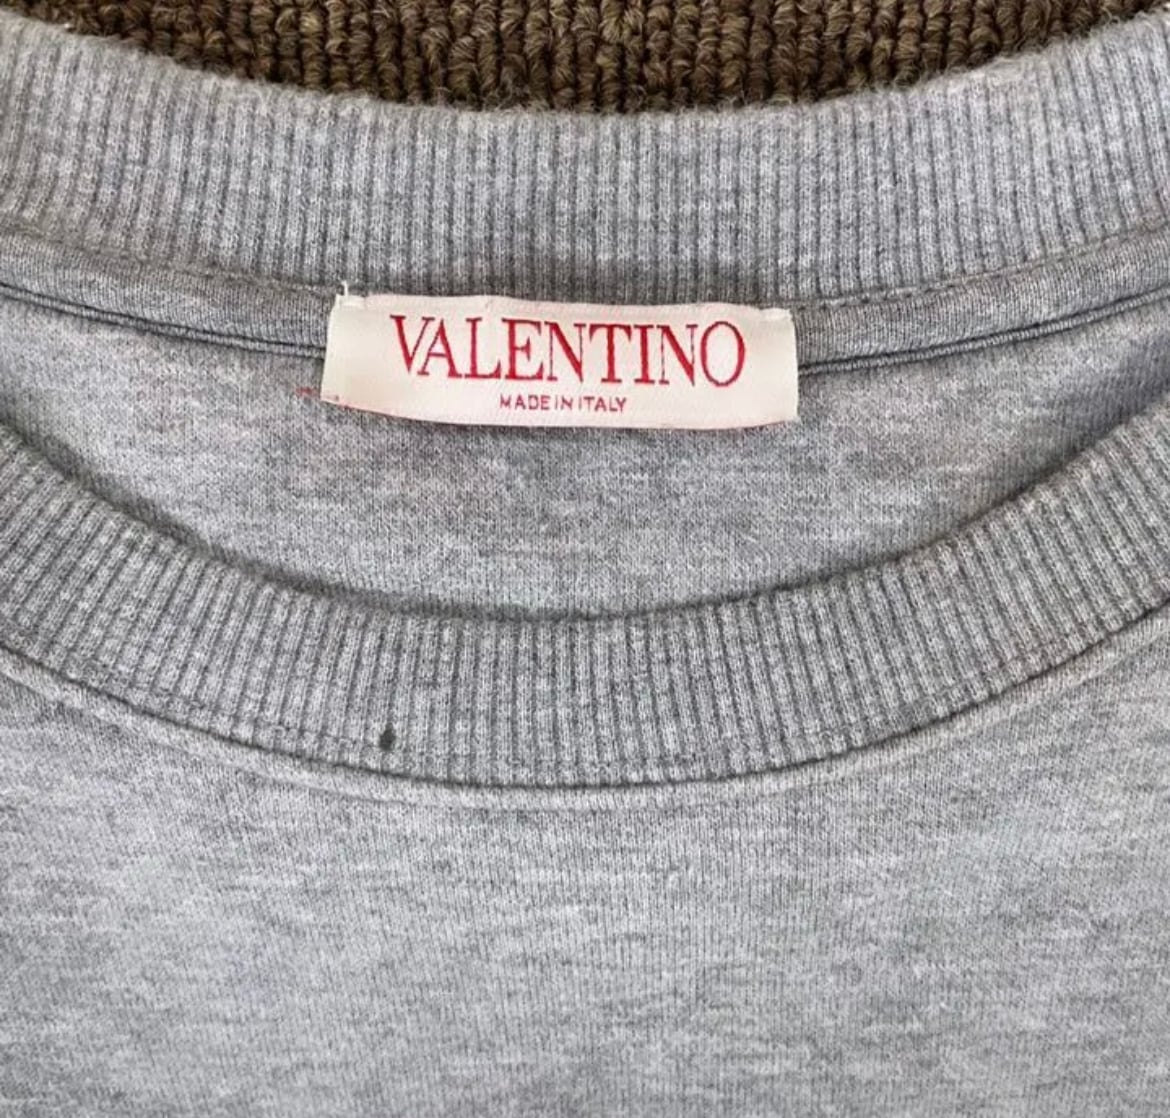 ヴァレンティノ VALENTINOメタリックエンボスト スウェットシャツ